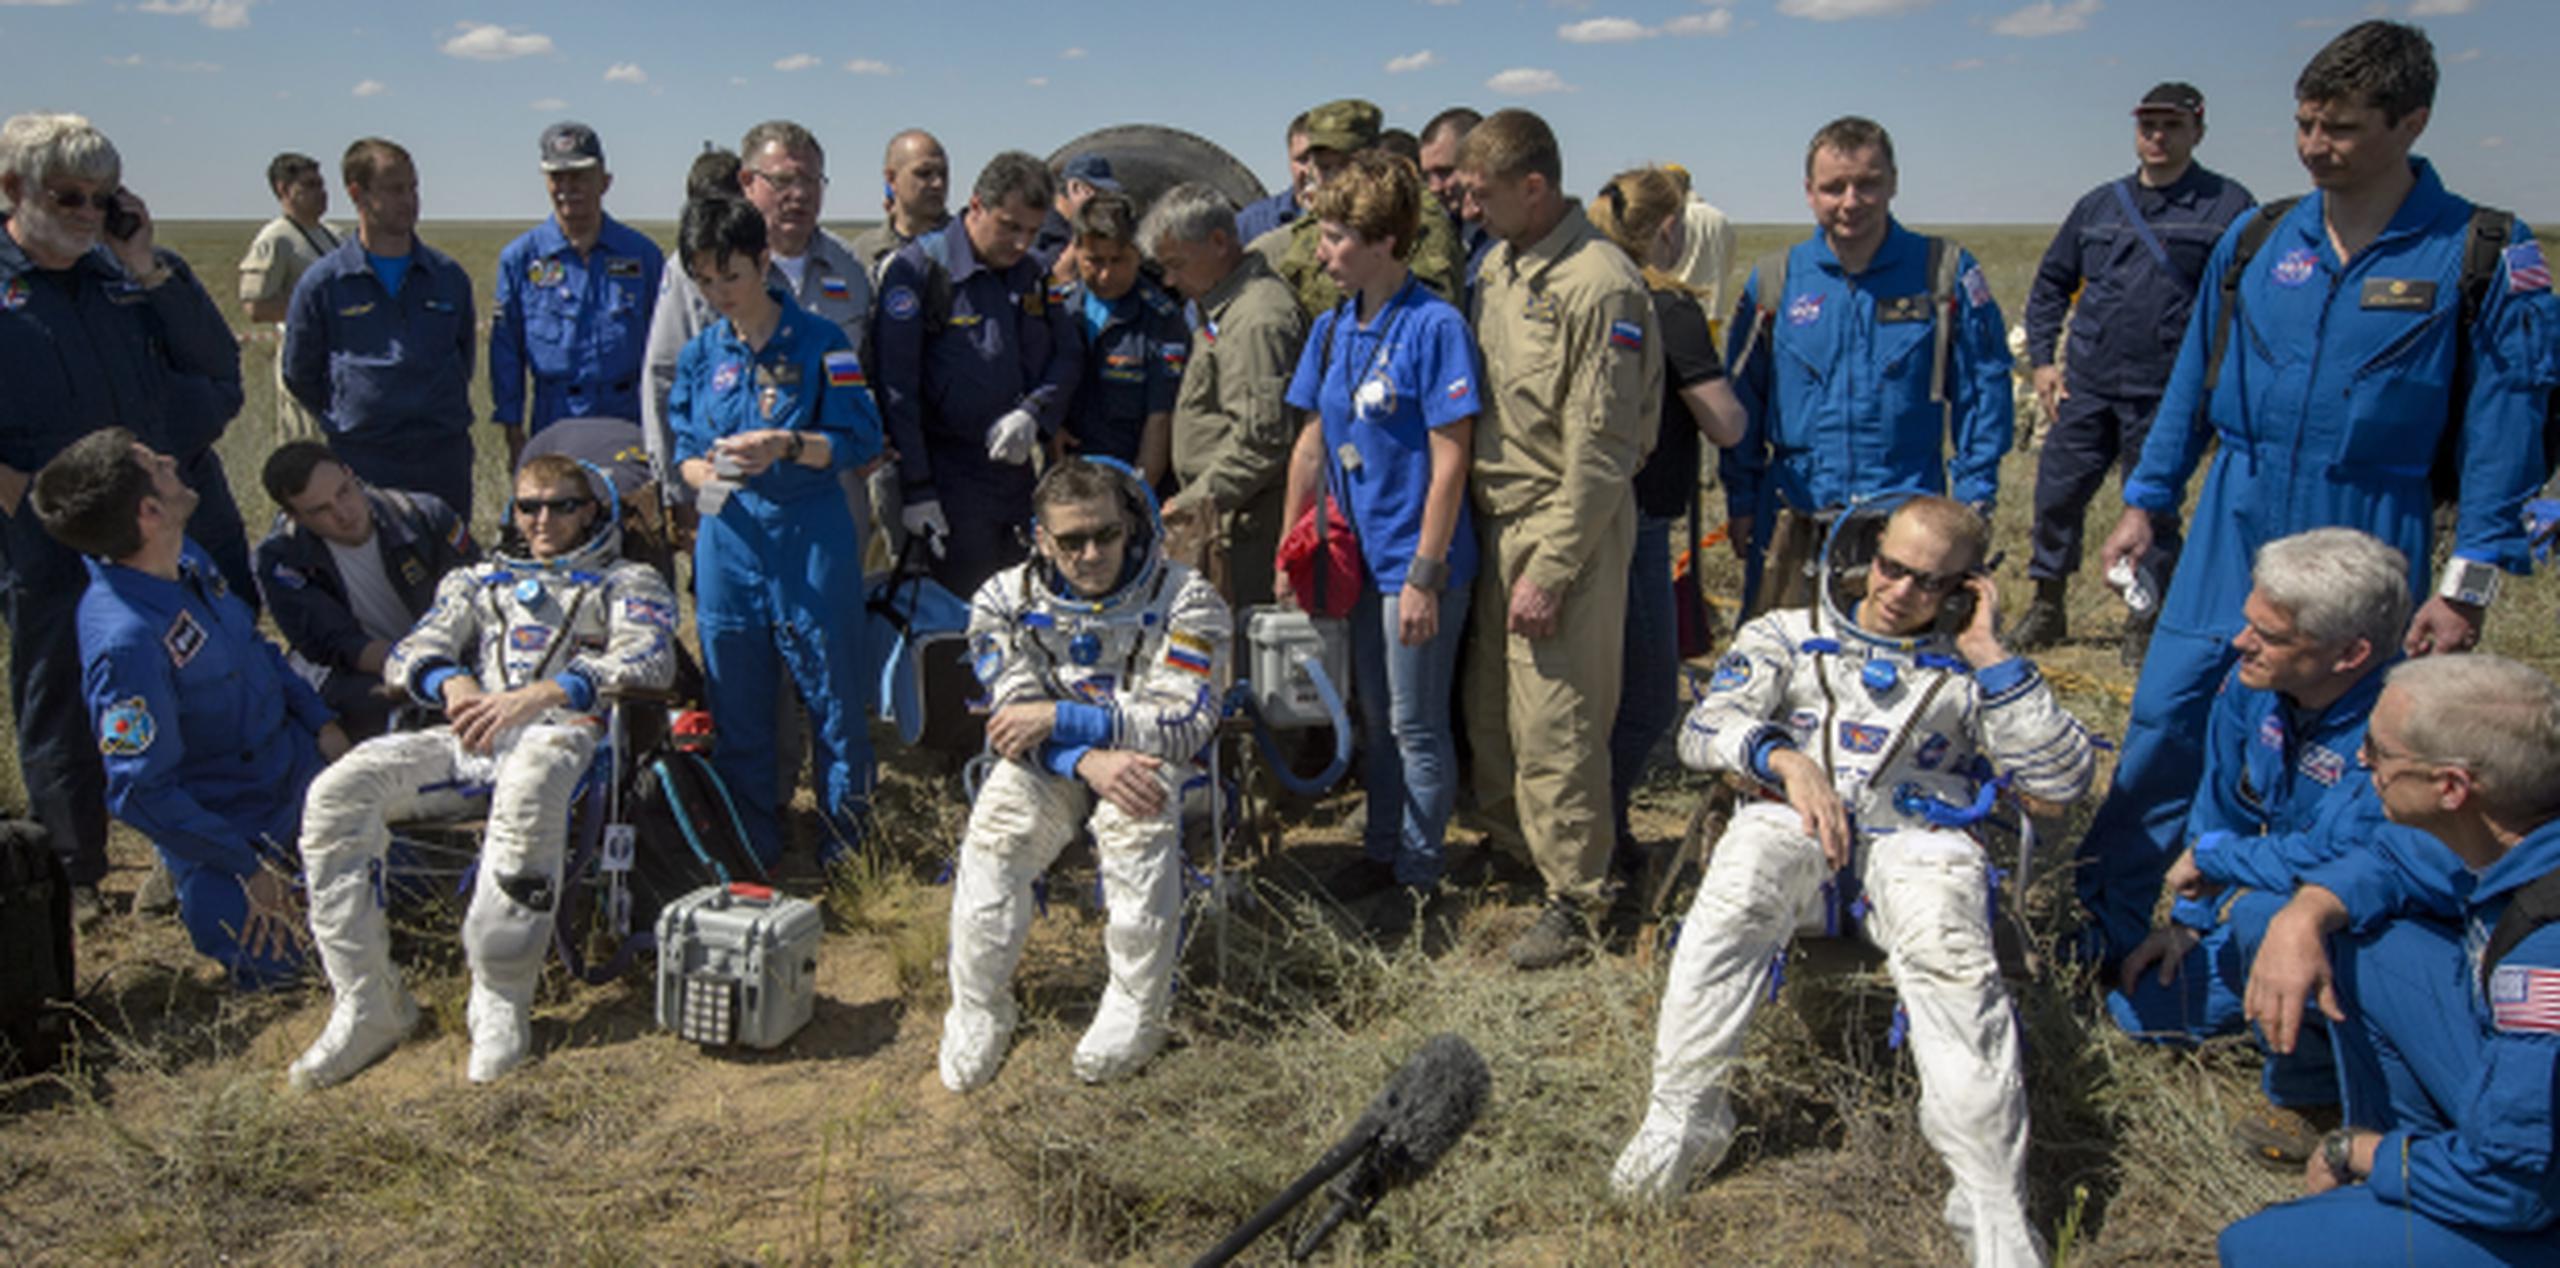 Los astronautas a su llegada. (Agencia EFE)